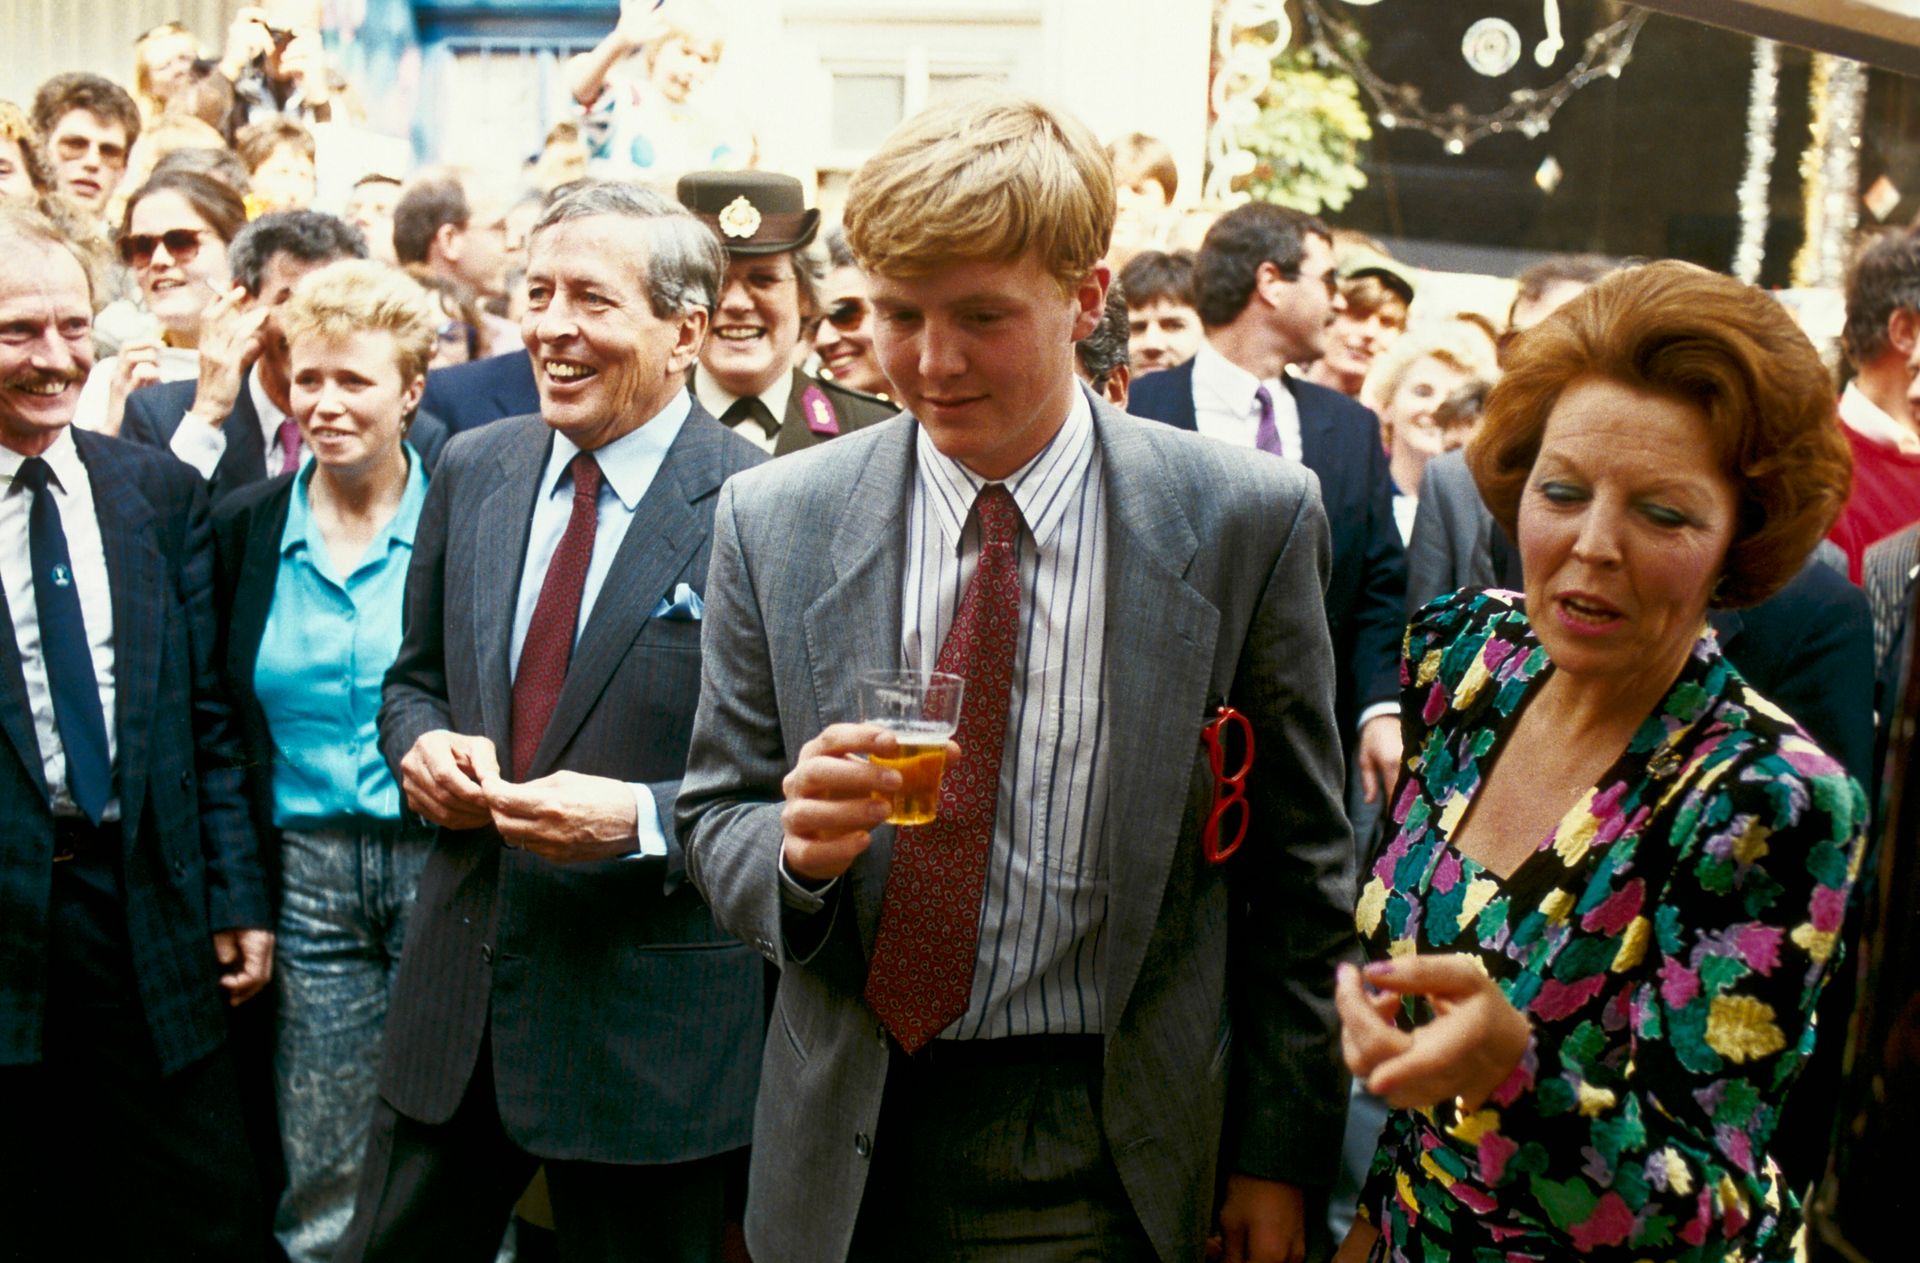 Op Koninginnedag 1988 brengt de koninklijke familie een verrassingsbezoek aan de Amsterdamse